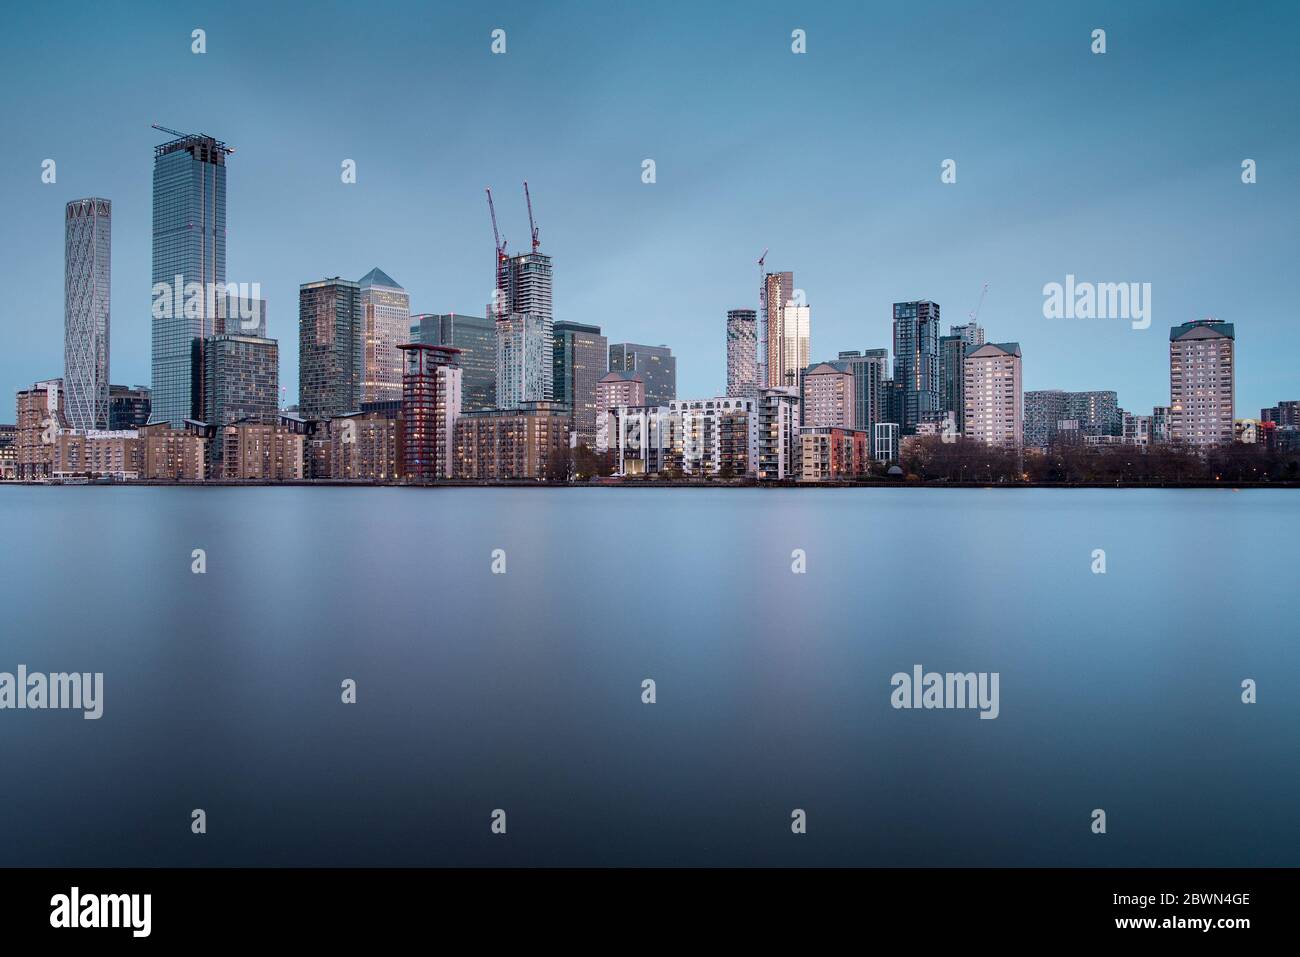 Skyline del quartiere di Canary Wharf, il quartiere finanziario di Londra, con nuovi grattacieli in ascesa Foto Stock